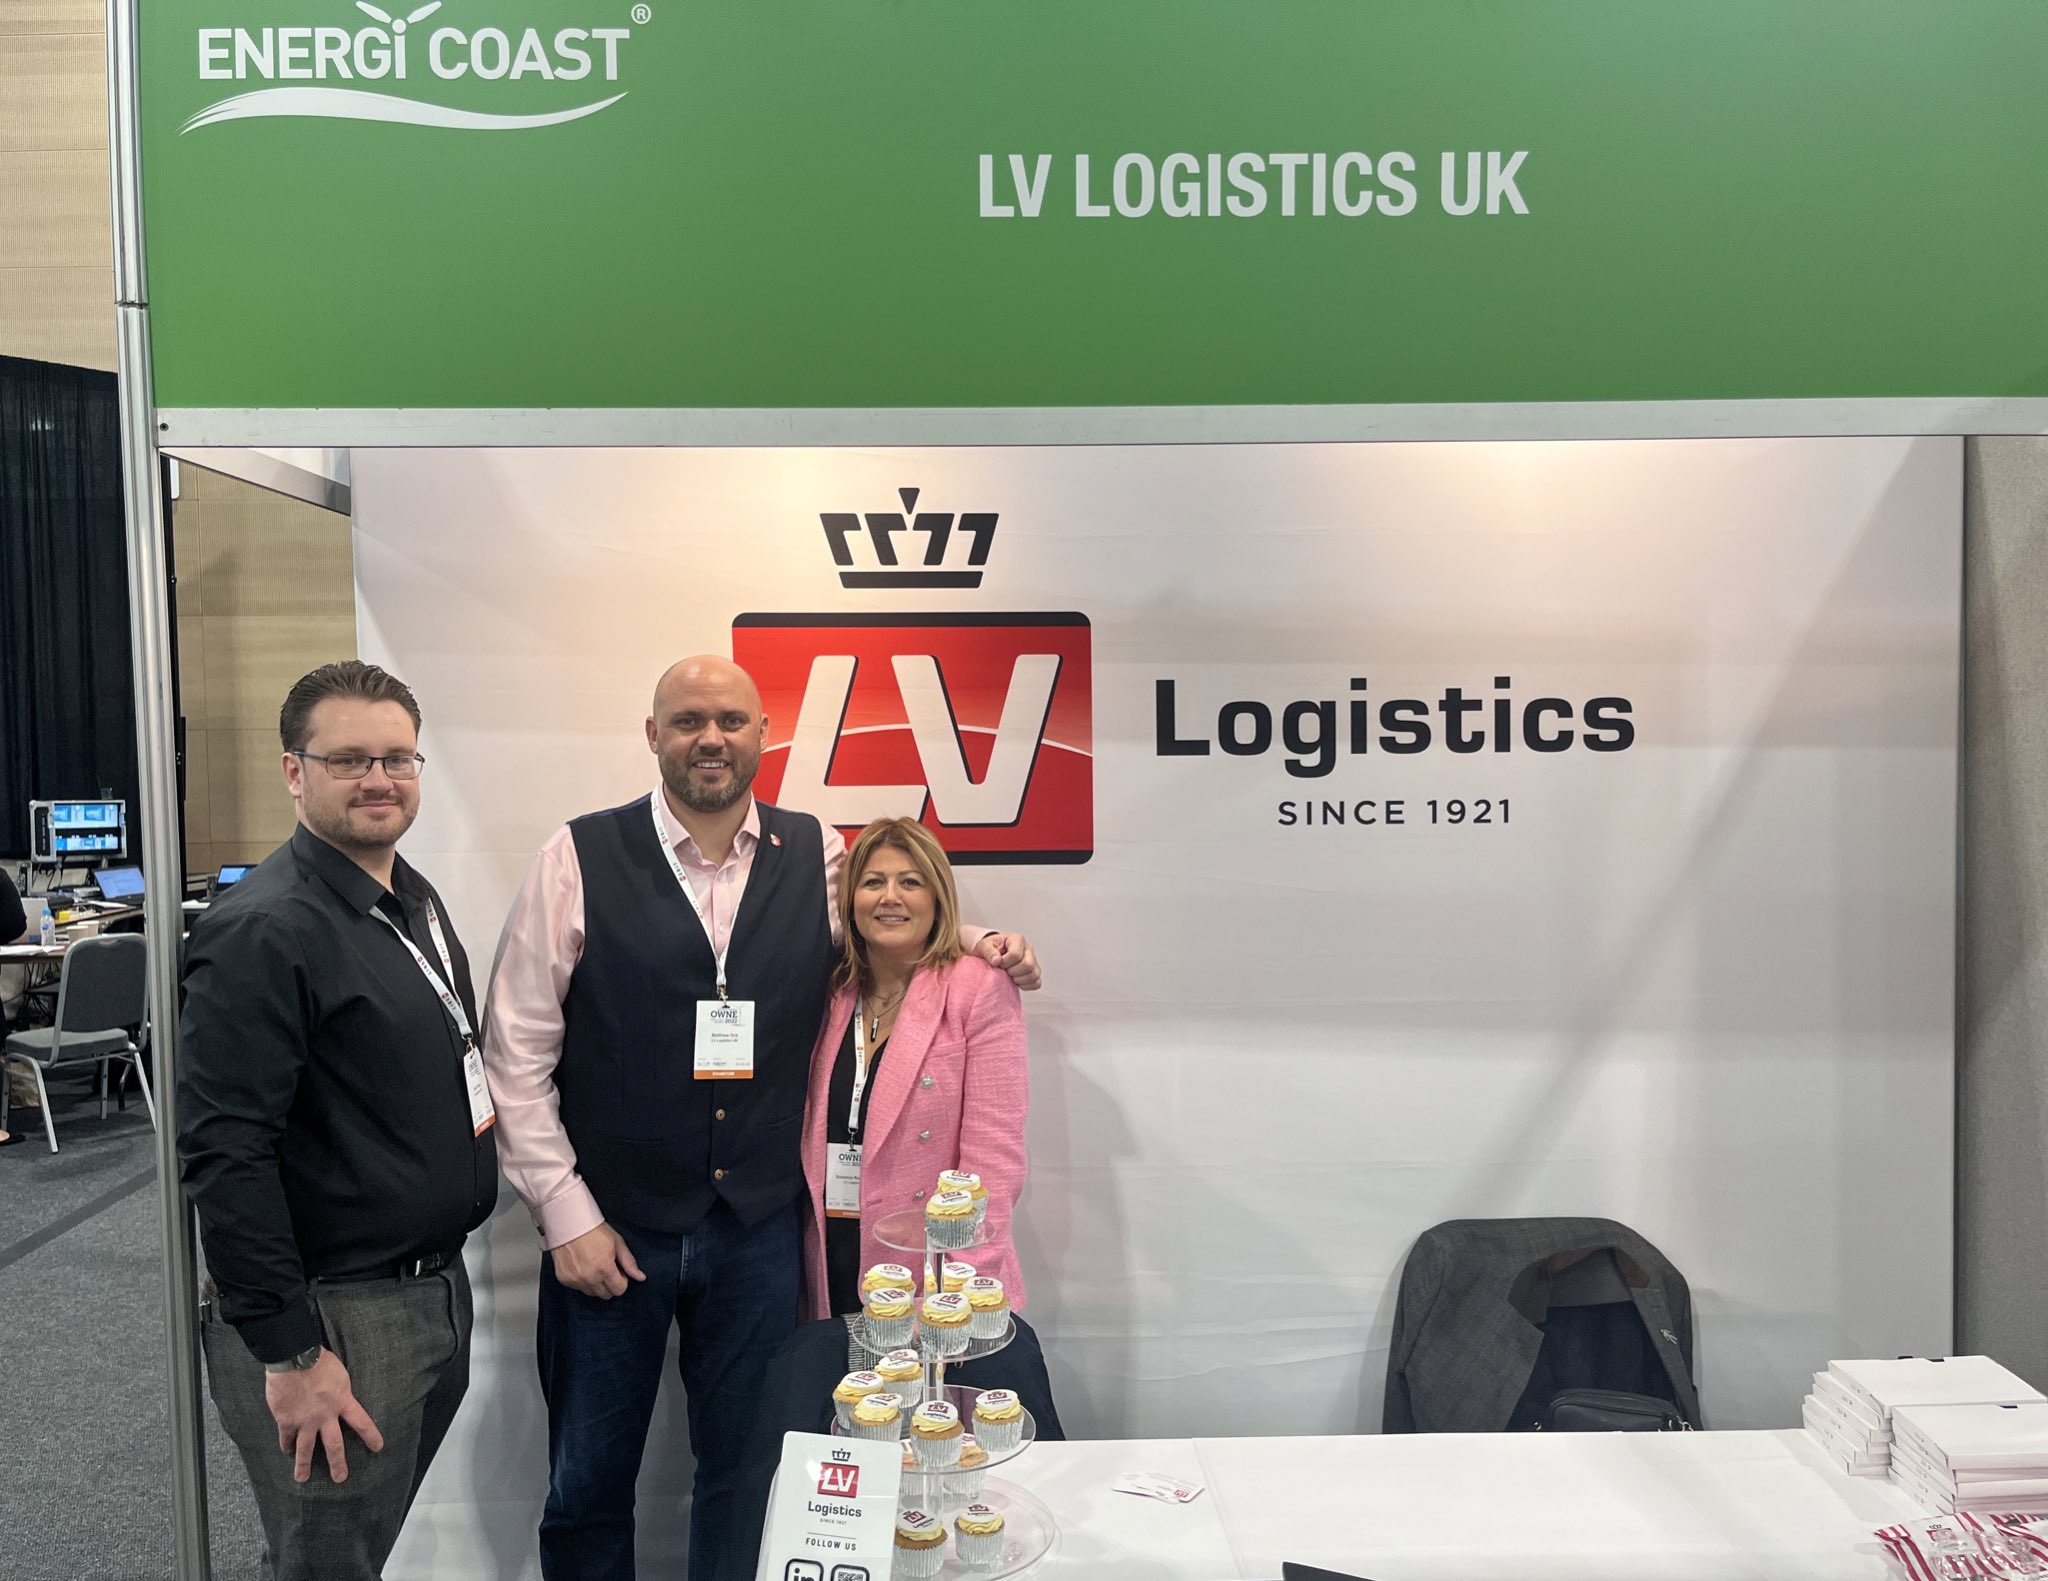 L.V. Logistics